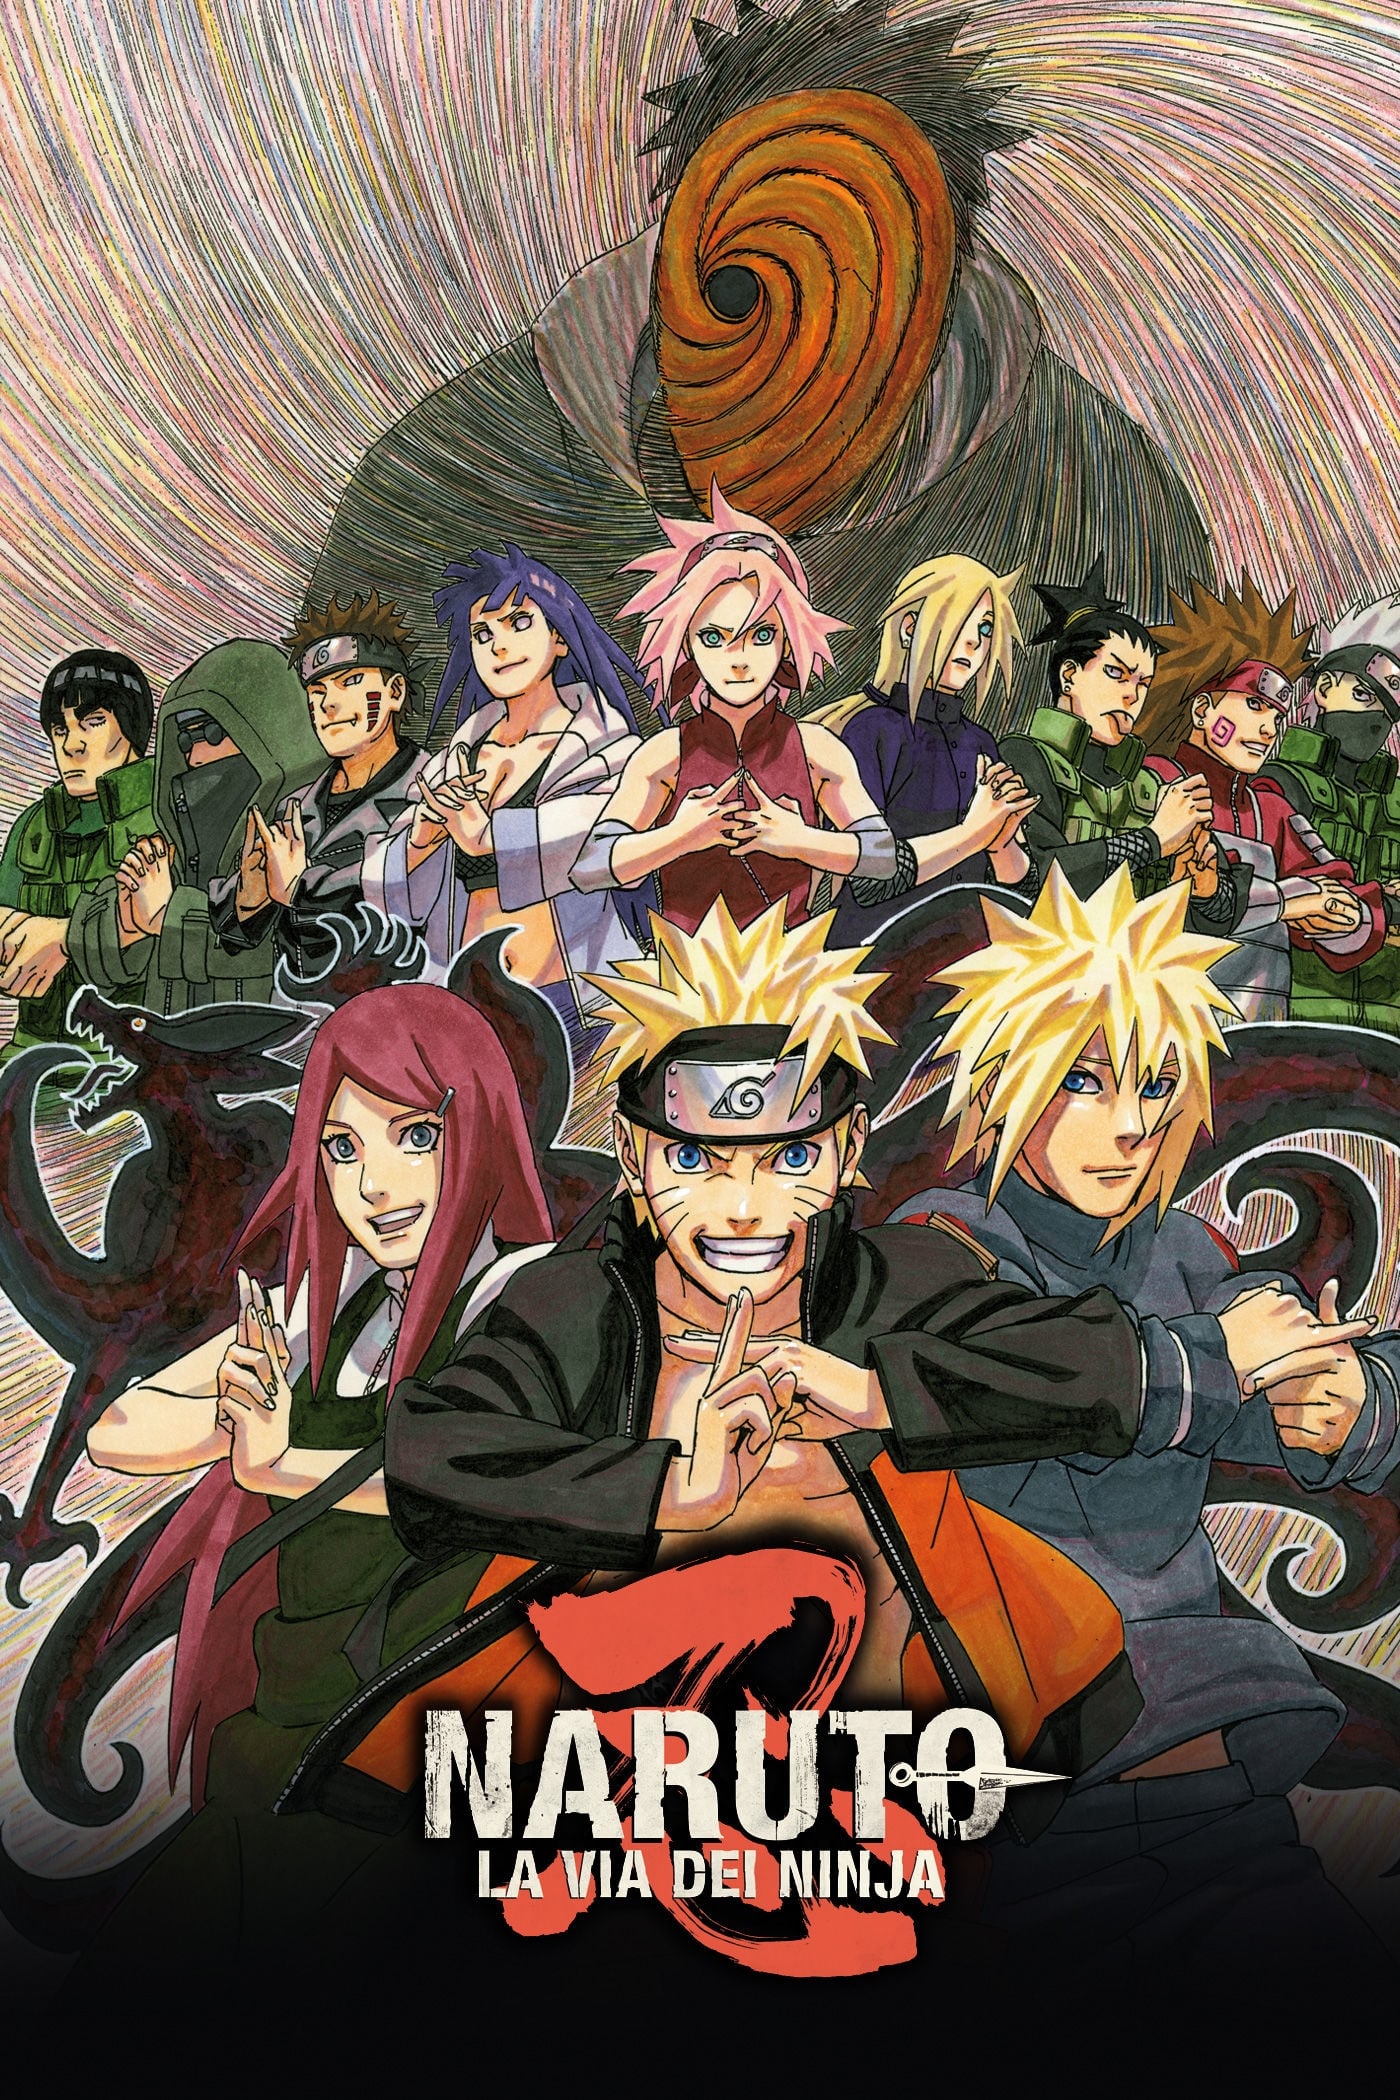 Naruto - La via dei ninja film